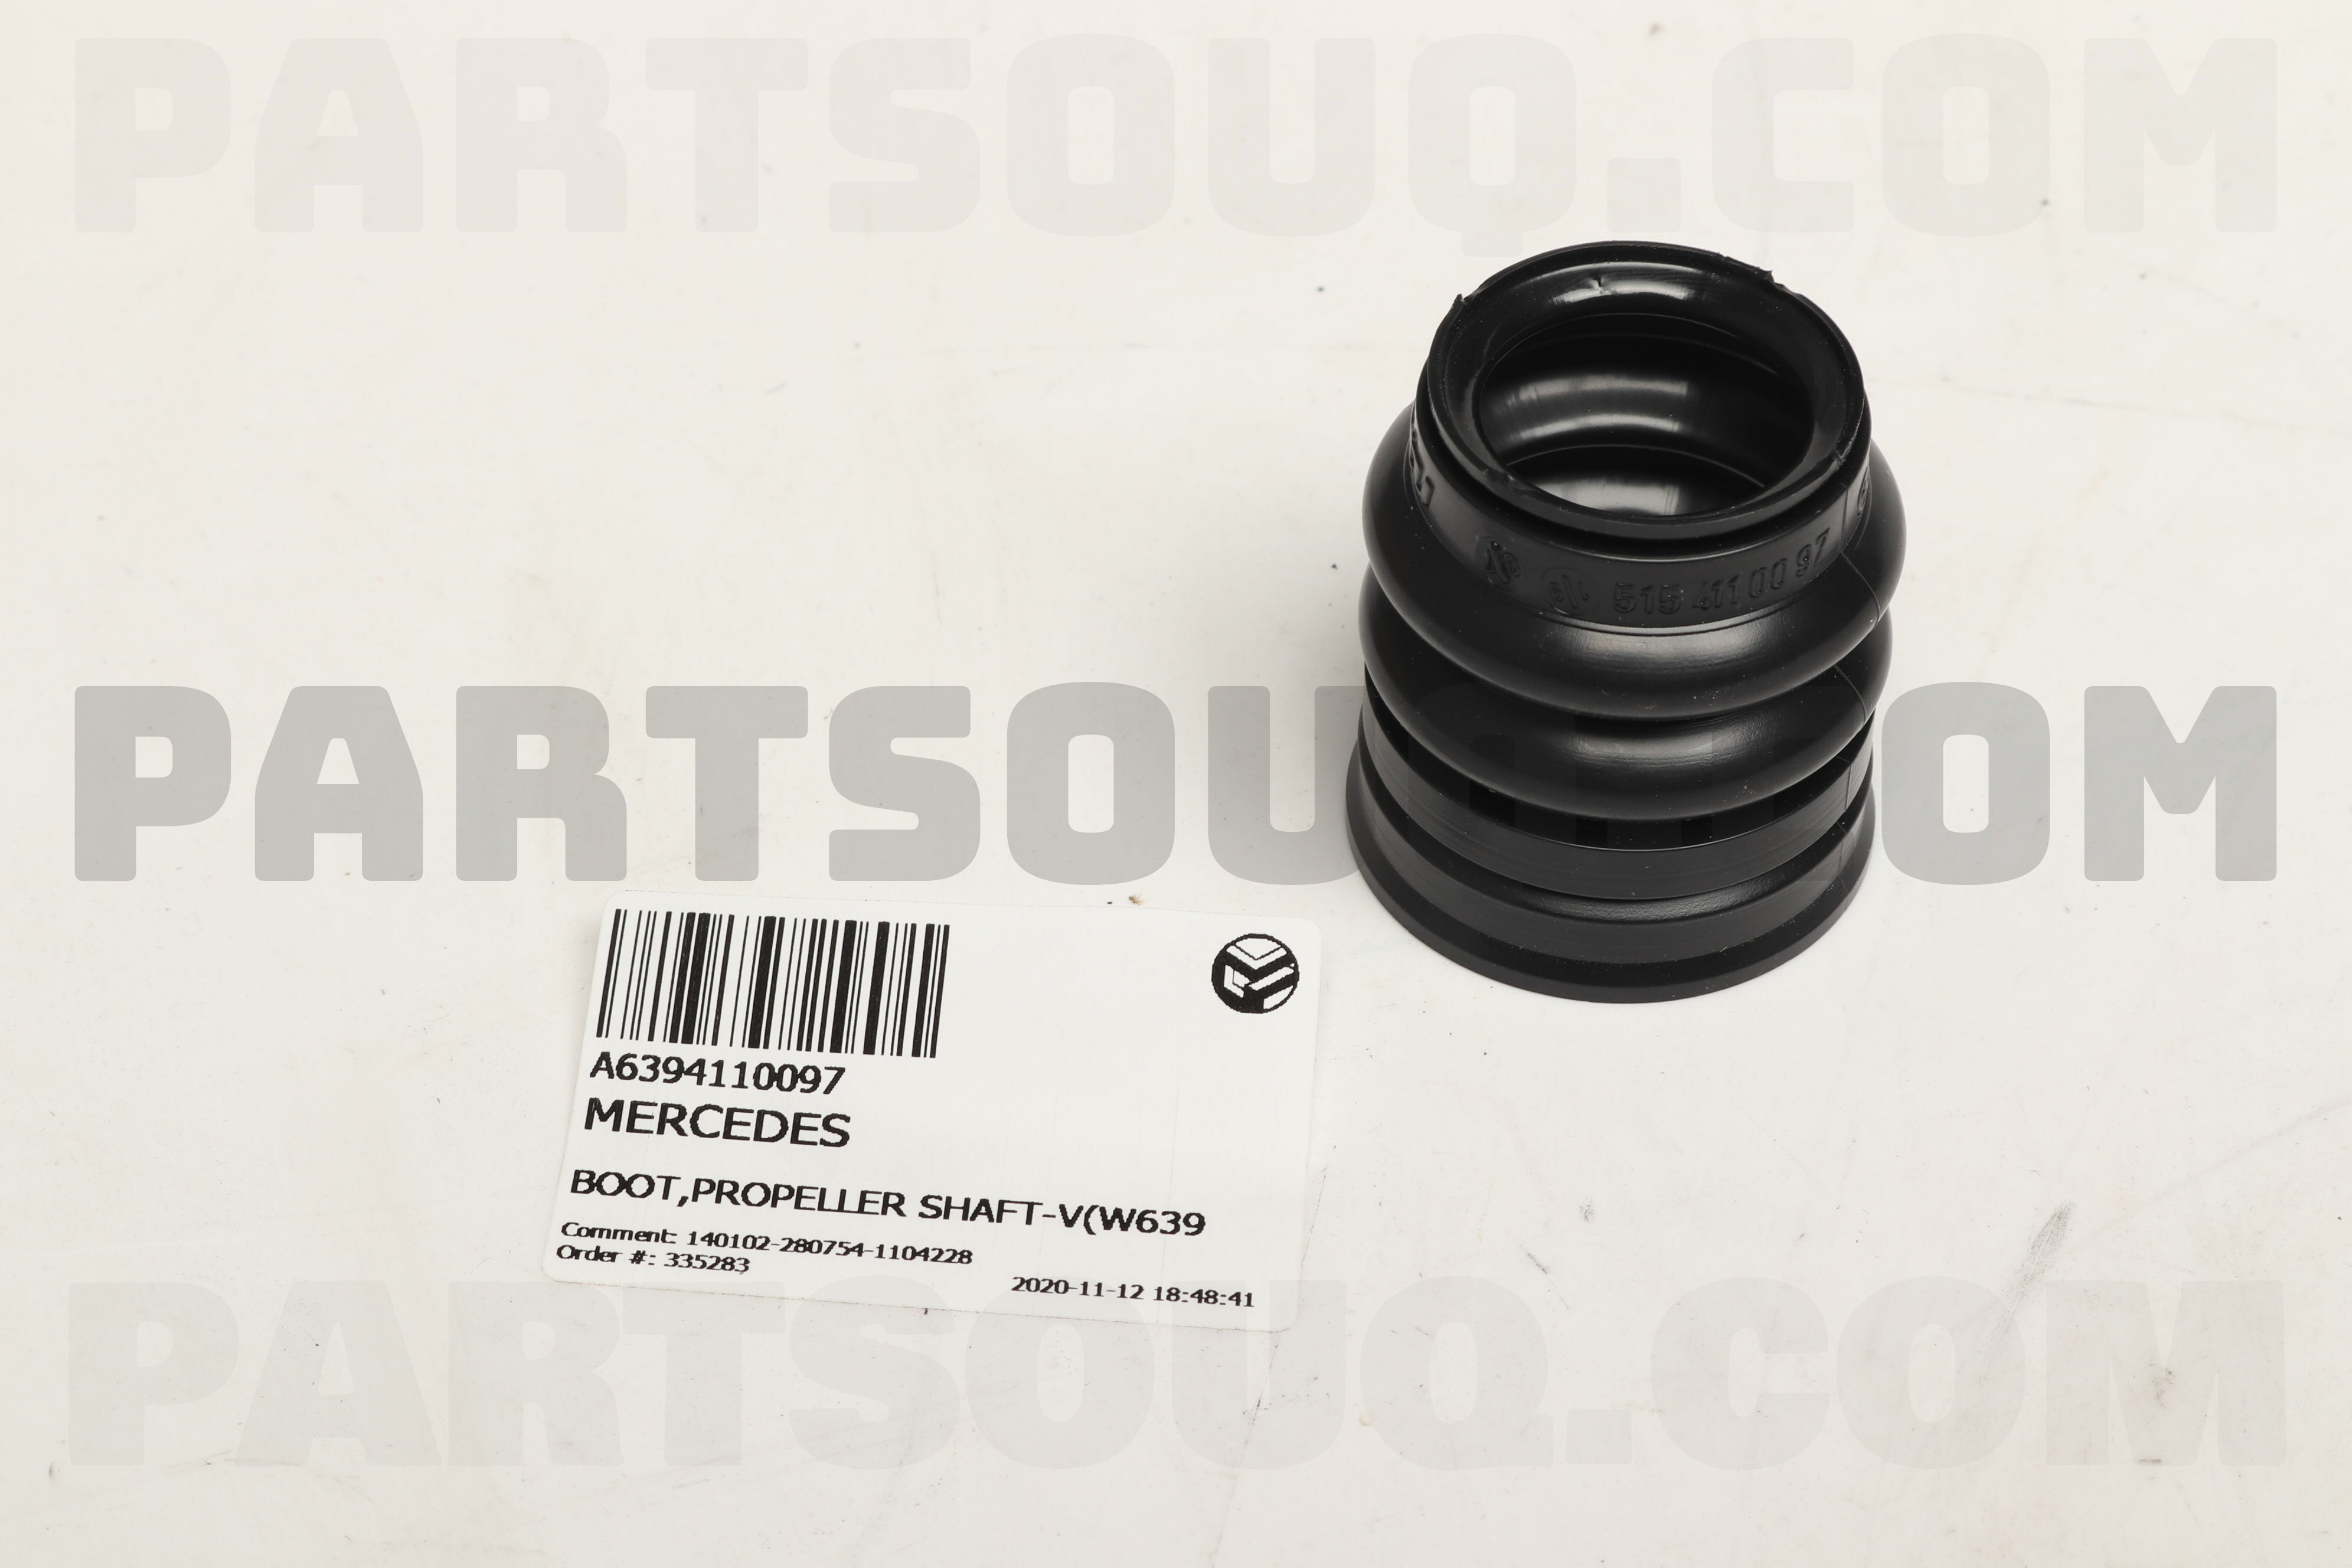 Boot,Propeller Shaft-V(W639) A6394110097 | Mercedes Parts | Partsouq